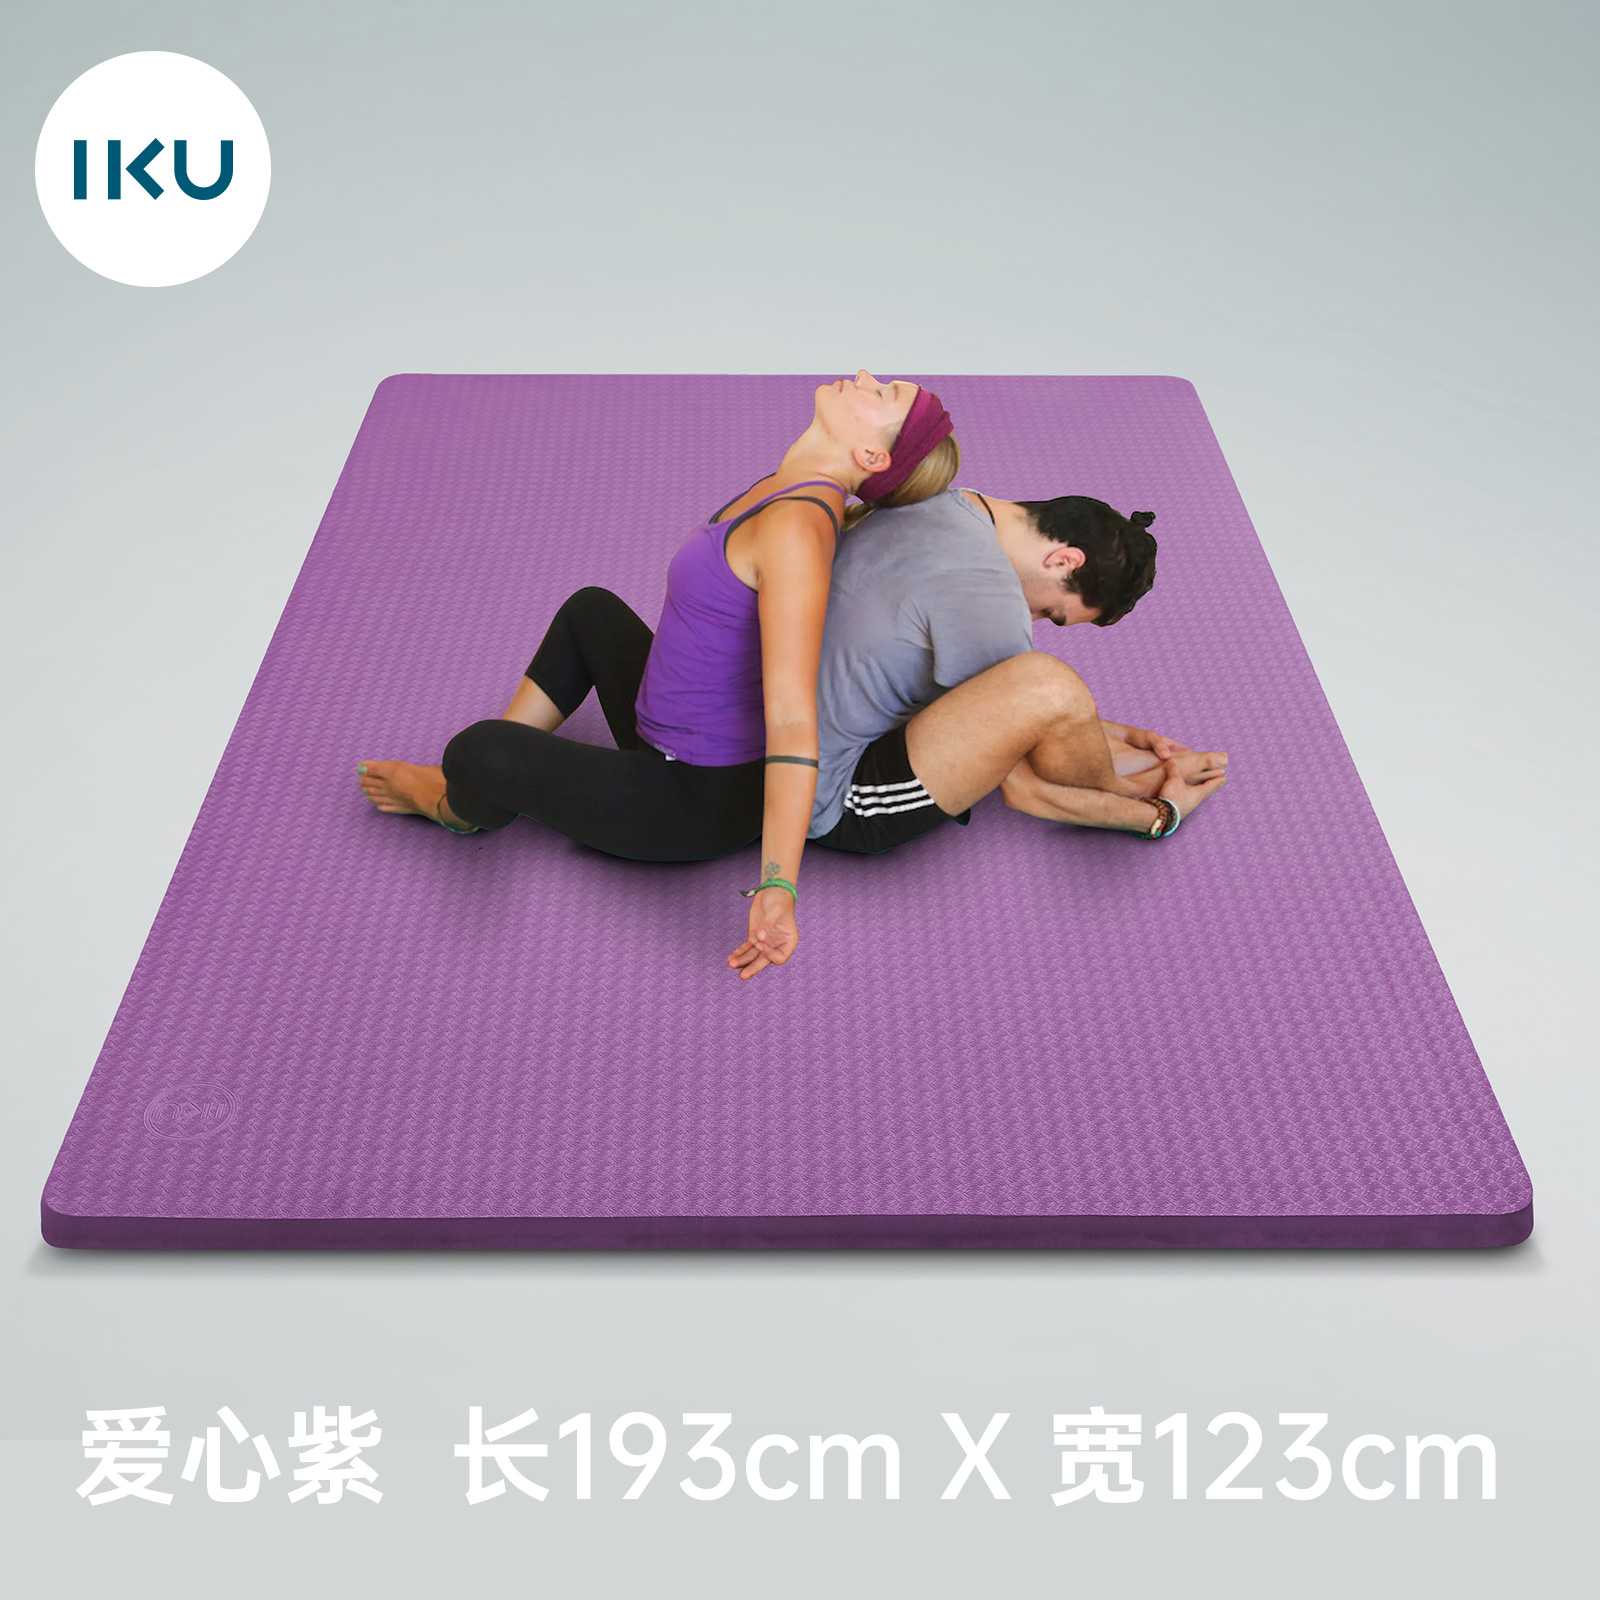 新款IKU加厚tpe双人瑜伽垫专业防滑家用加大超厚加宽120cm运动健